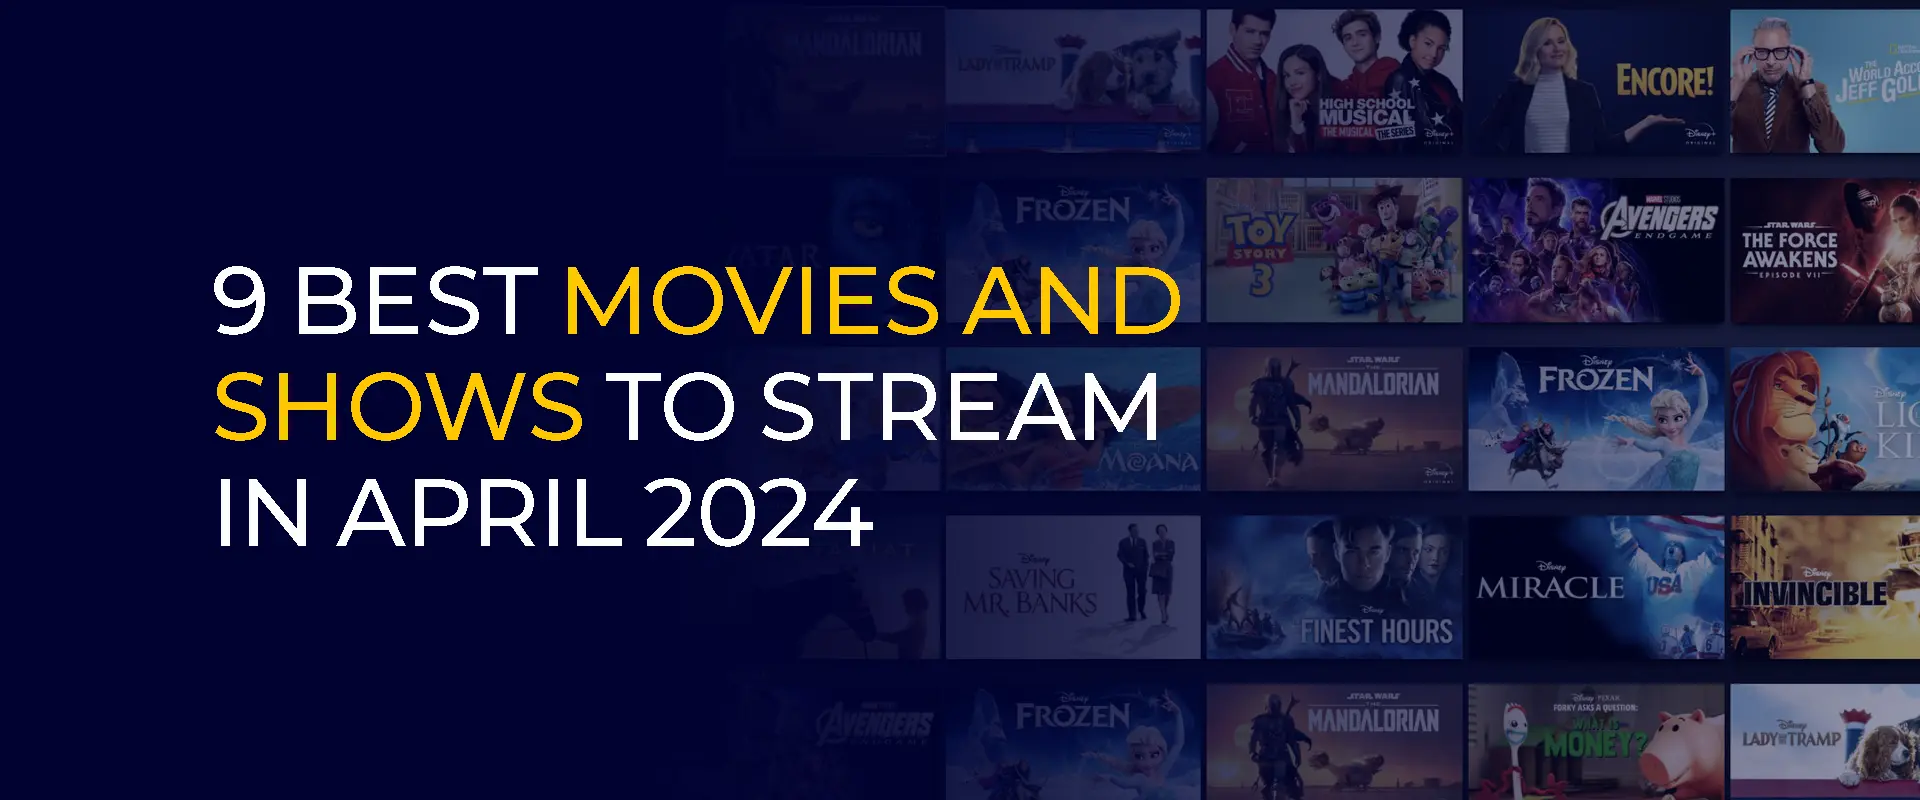 9 melhores filmes e programas para transmitir em abril de 2024